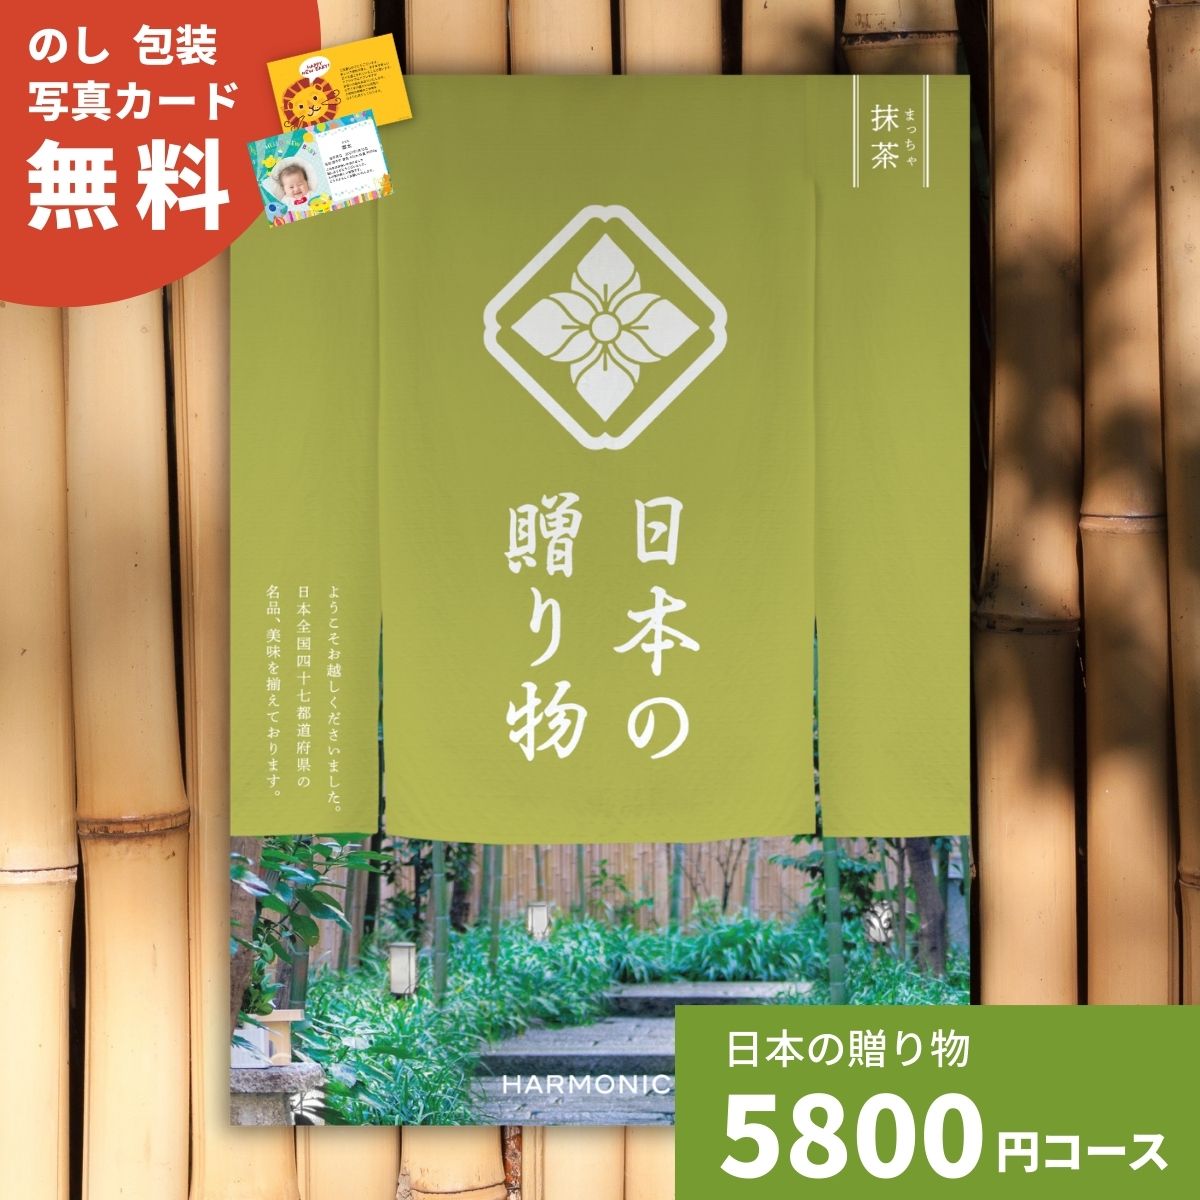 【ポイント10倍】カタログギフト 日本の贈り物 抹茶 まっち